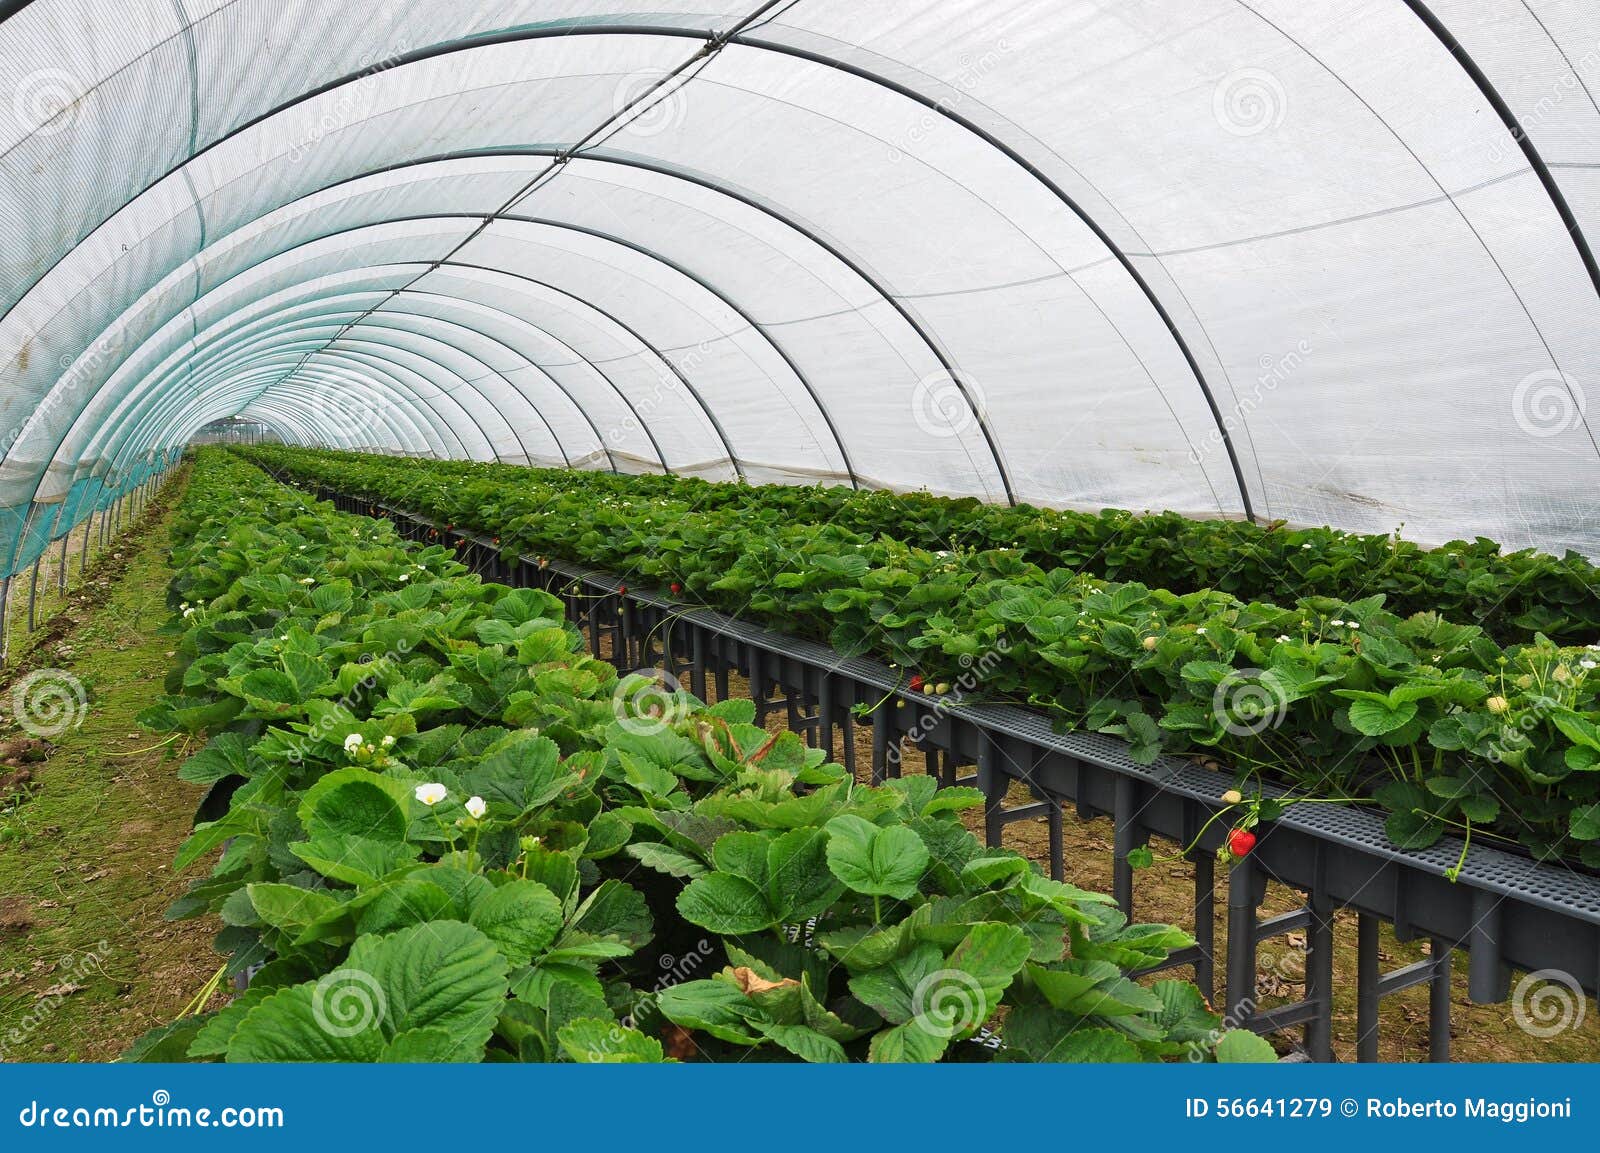 modern strawberry farm. industrial tunnel farming